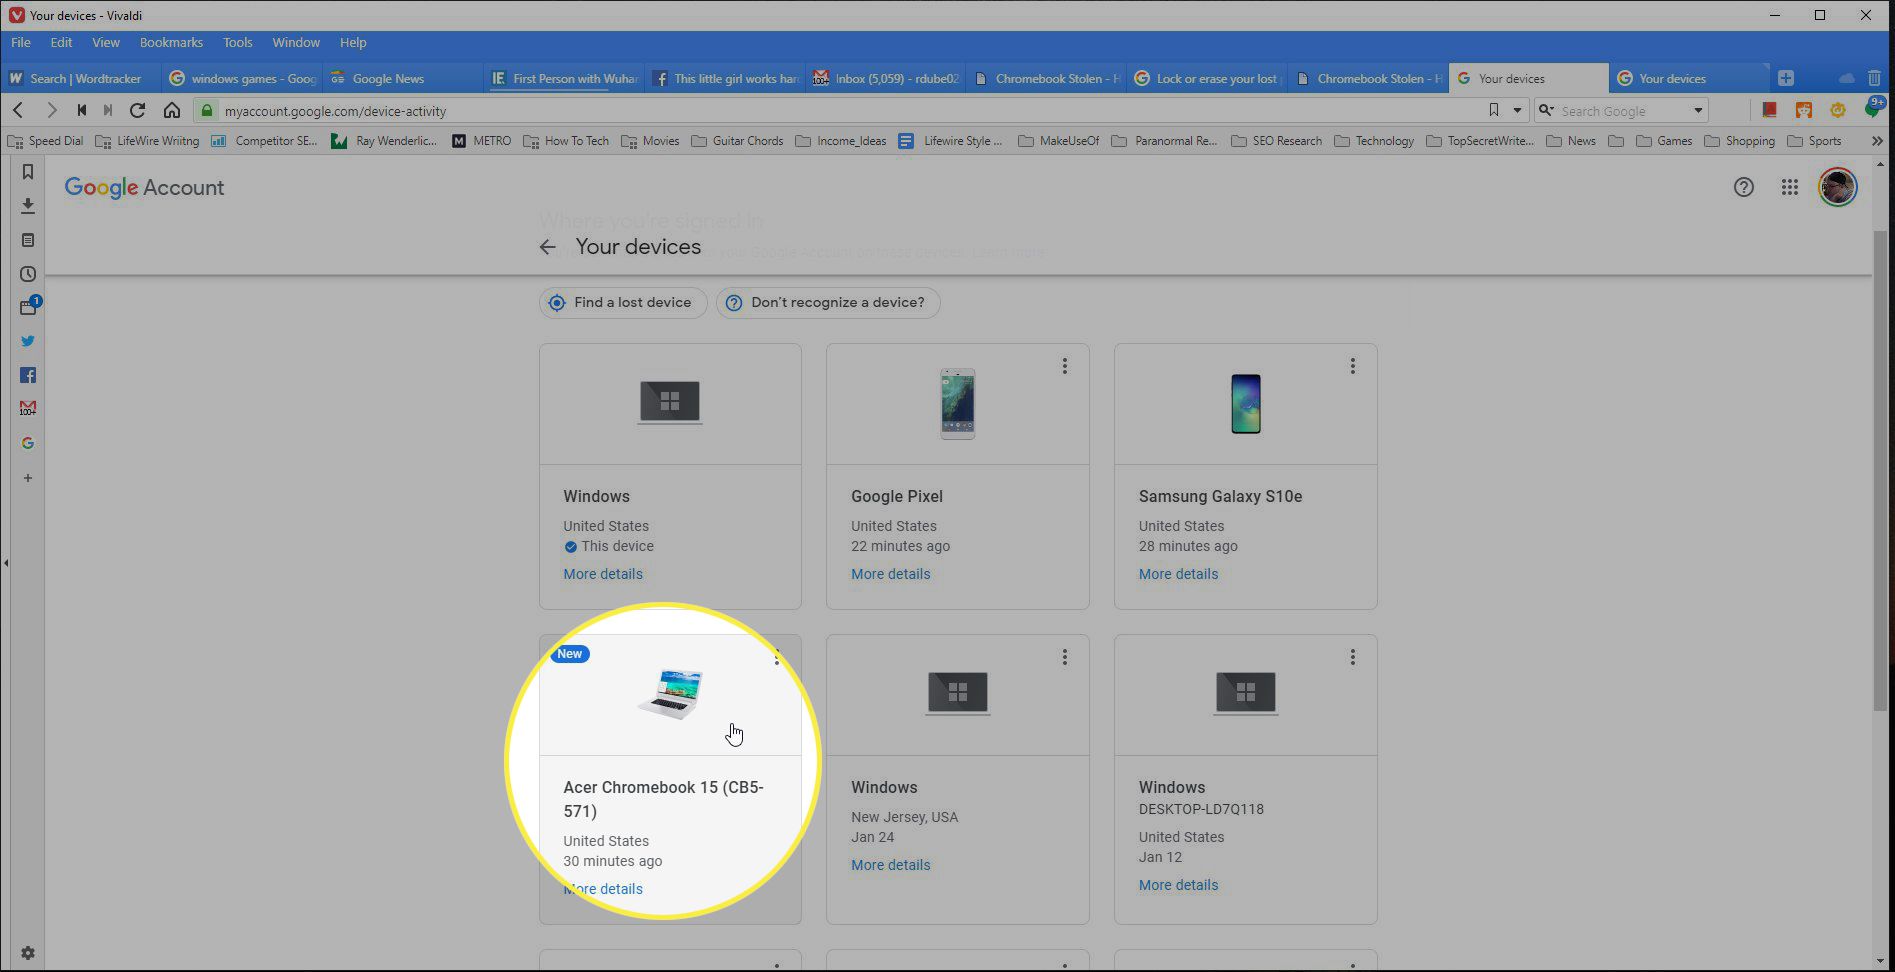 Google-tilin laitteet, joissa on merkintä Chromebook